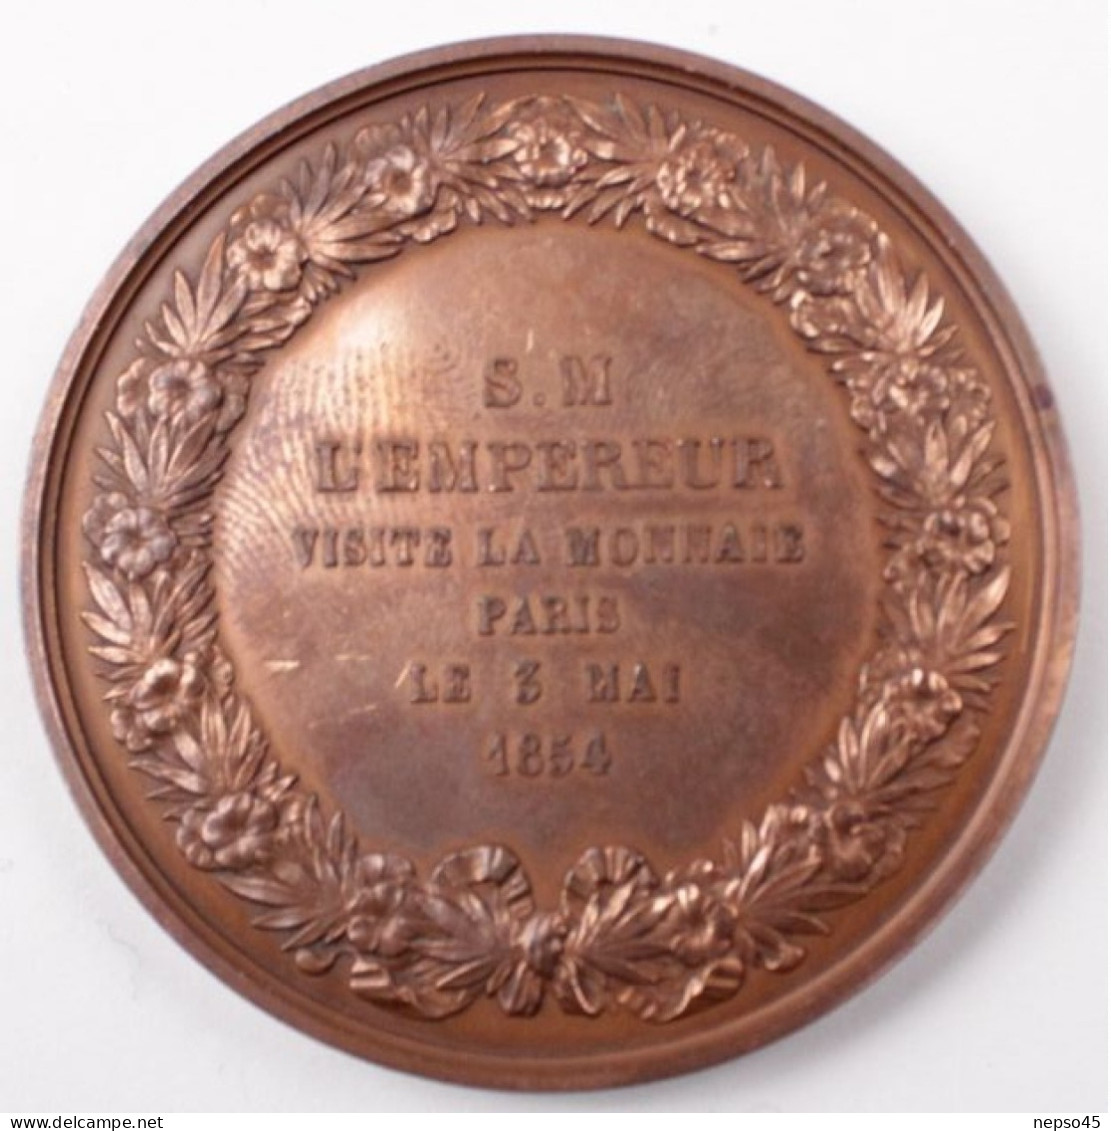 Médaille De Table Commémorative.Bronze.Empereur Napoléon III Visite La Monnaie.Paris 3 Mai 1854. - Royaux / De Noblesse